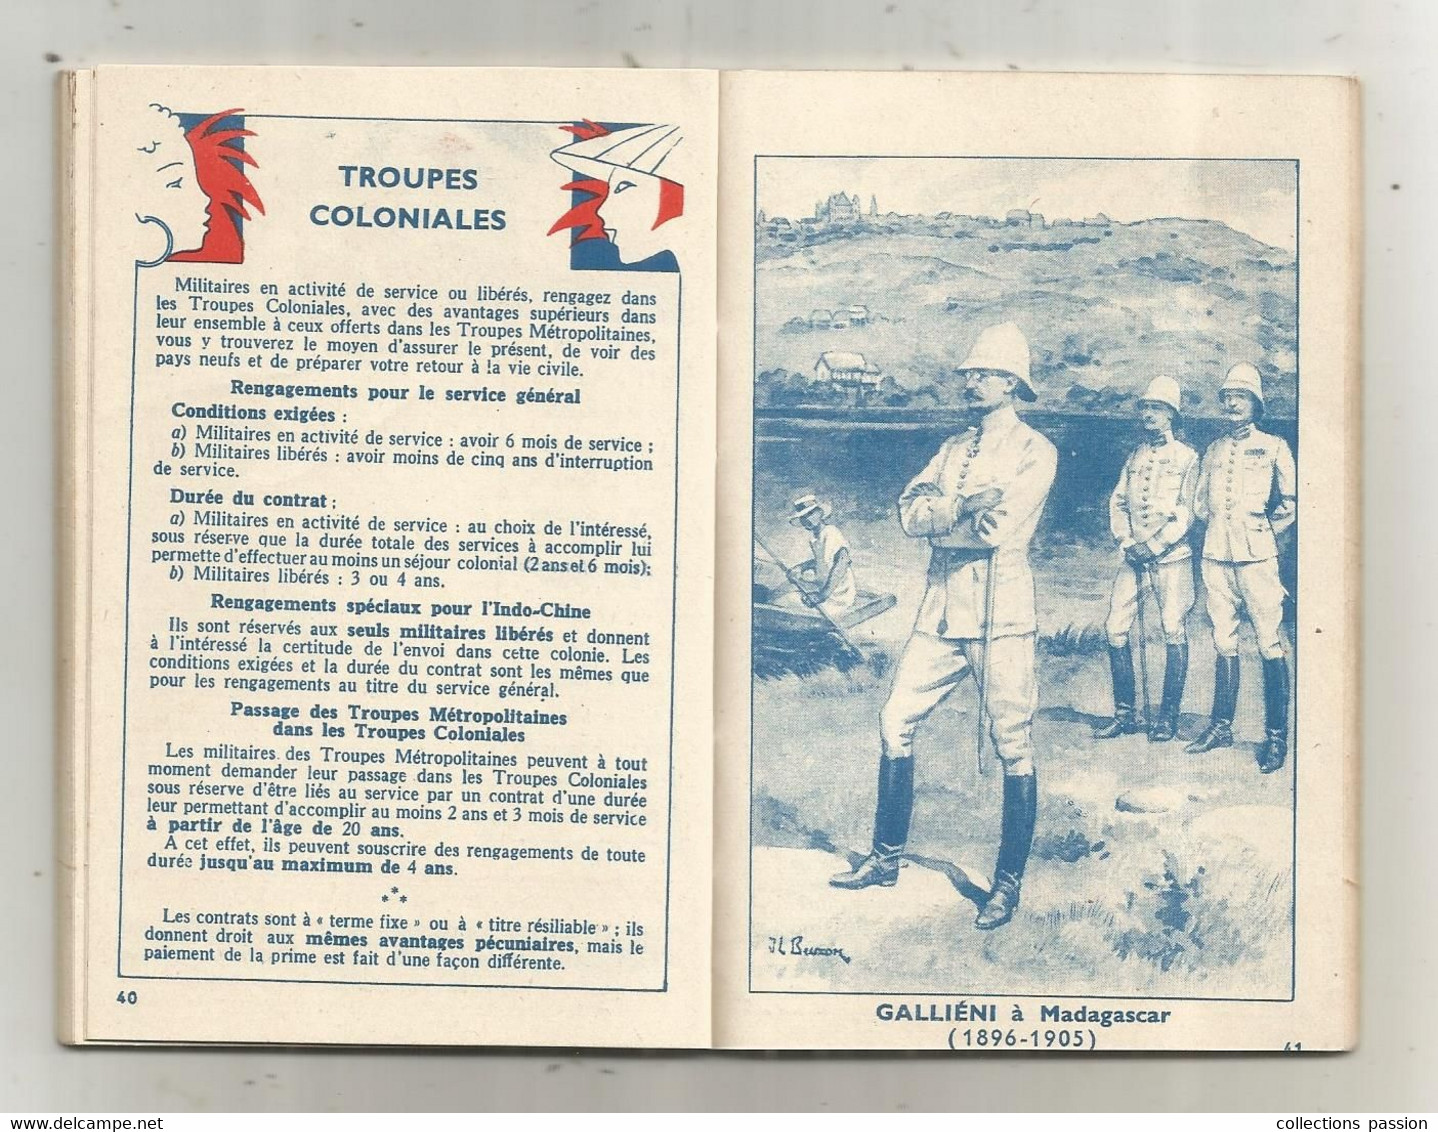 Calendrier Du Soldat Français , Militaria ,1933-1935 ,agenda ,64 Pages ,frais Fr 3.35 E - Documentos